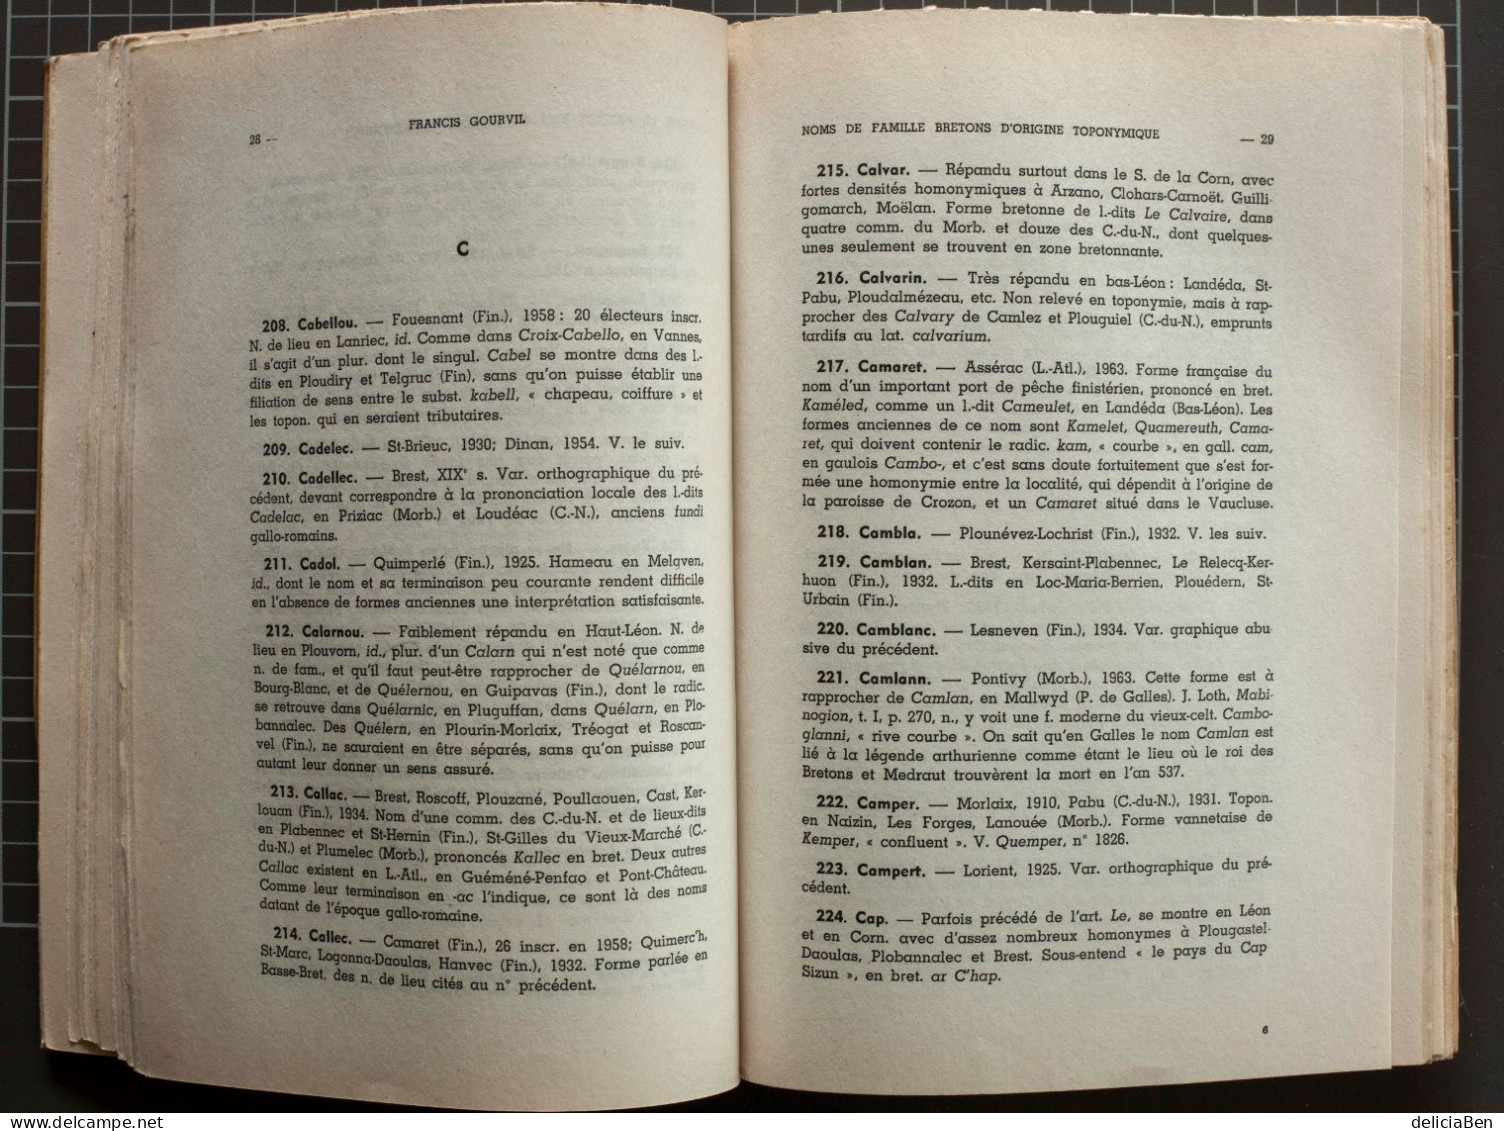 Francis Gourvil, Noms De Famille Bretons D'origine Toponymique. Editions De La Société Archéologique Du Finistère, 1970 - Dictionnaires